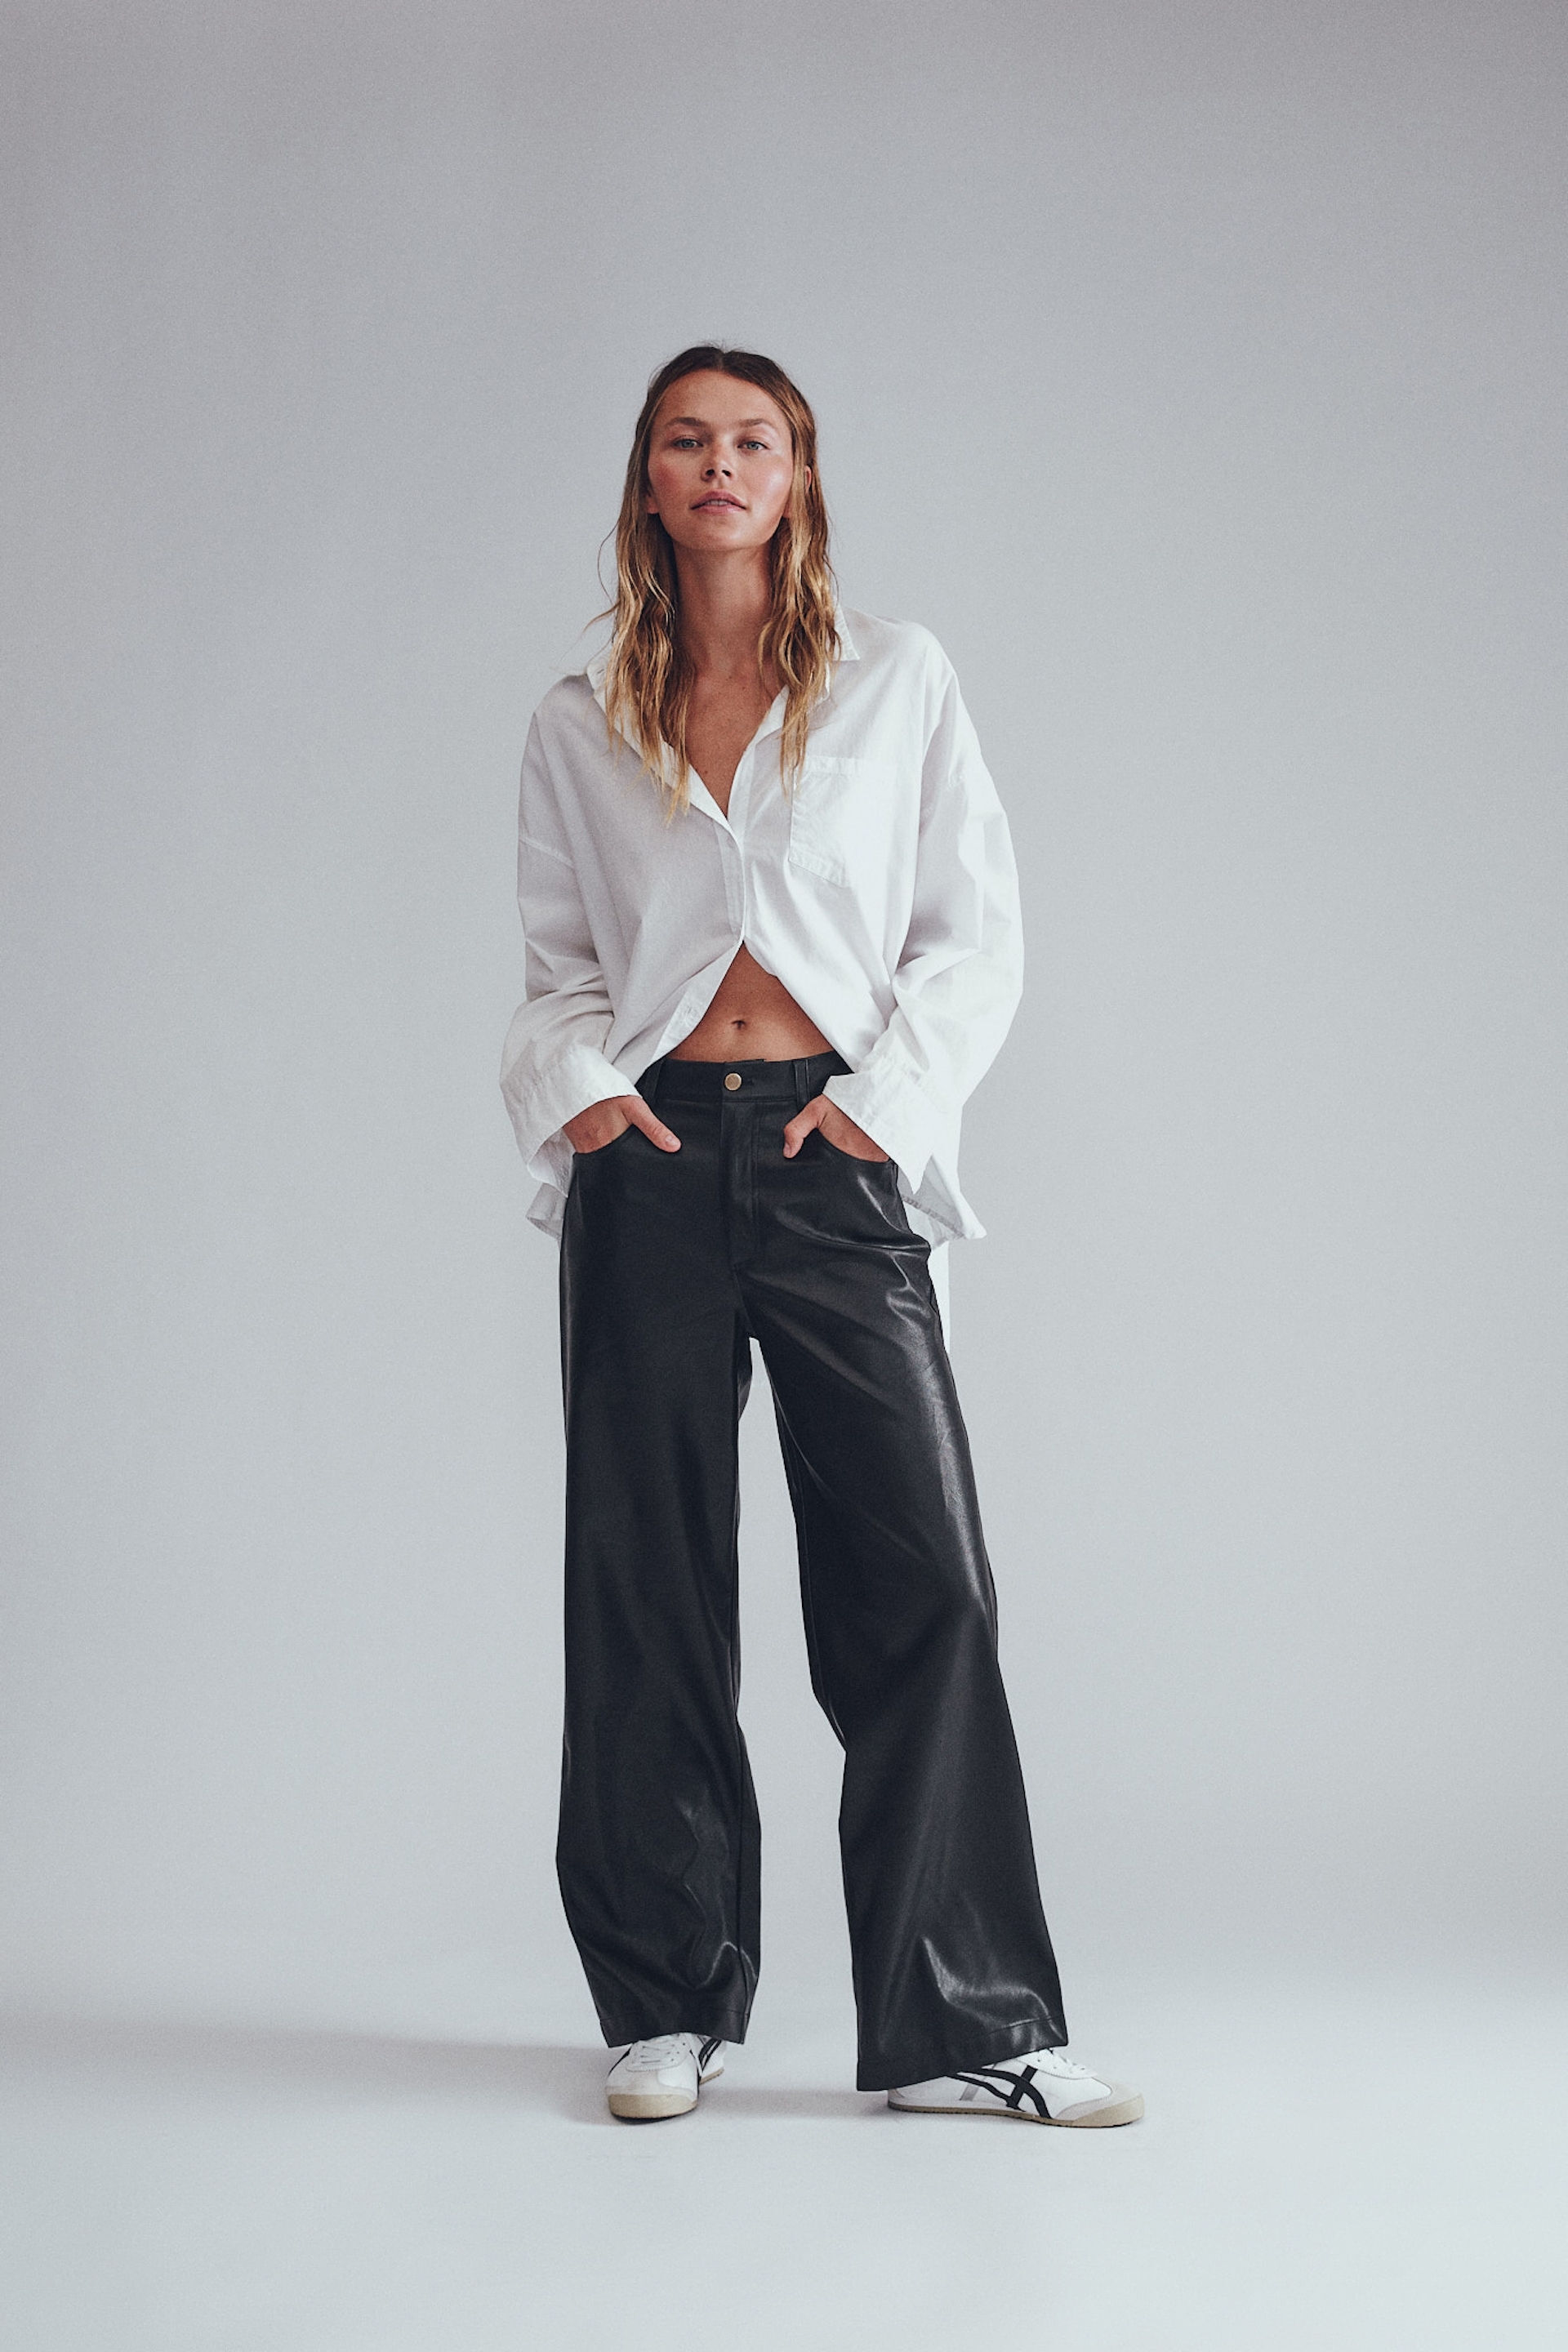 Faux Leather Pants - Black - Ladies | H&M US